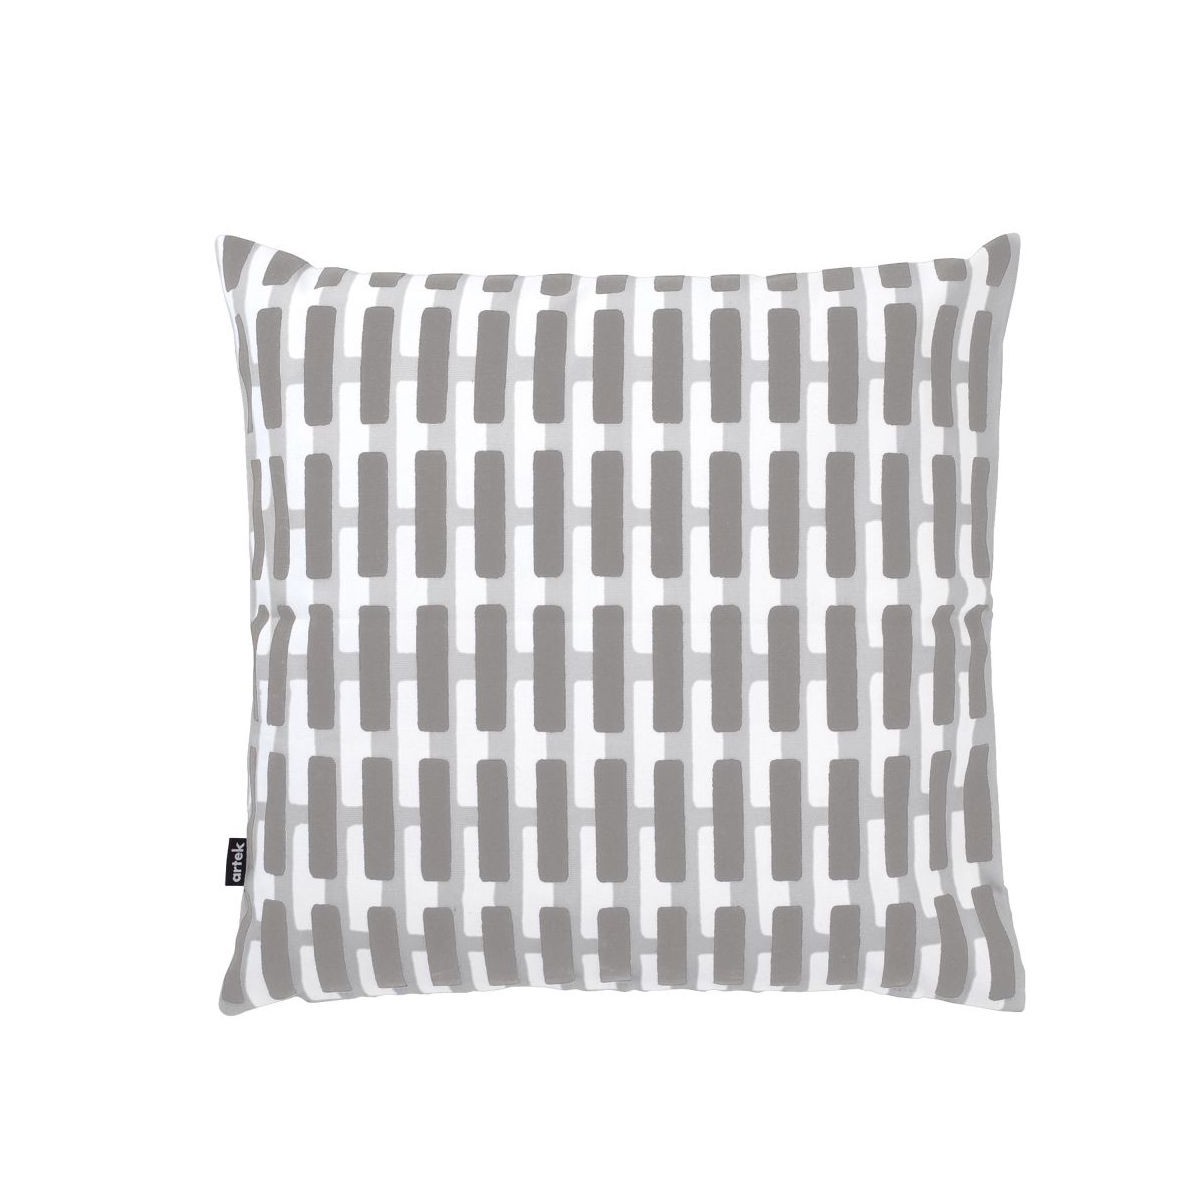 40x40cm - Siena cushion cover - grey / light grey